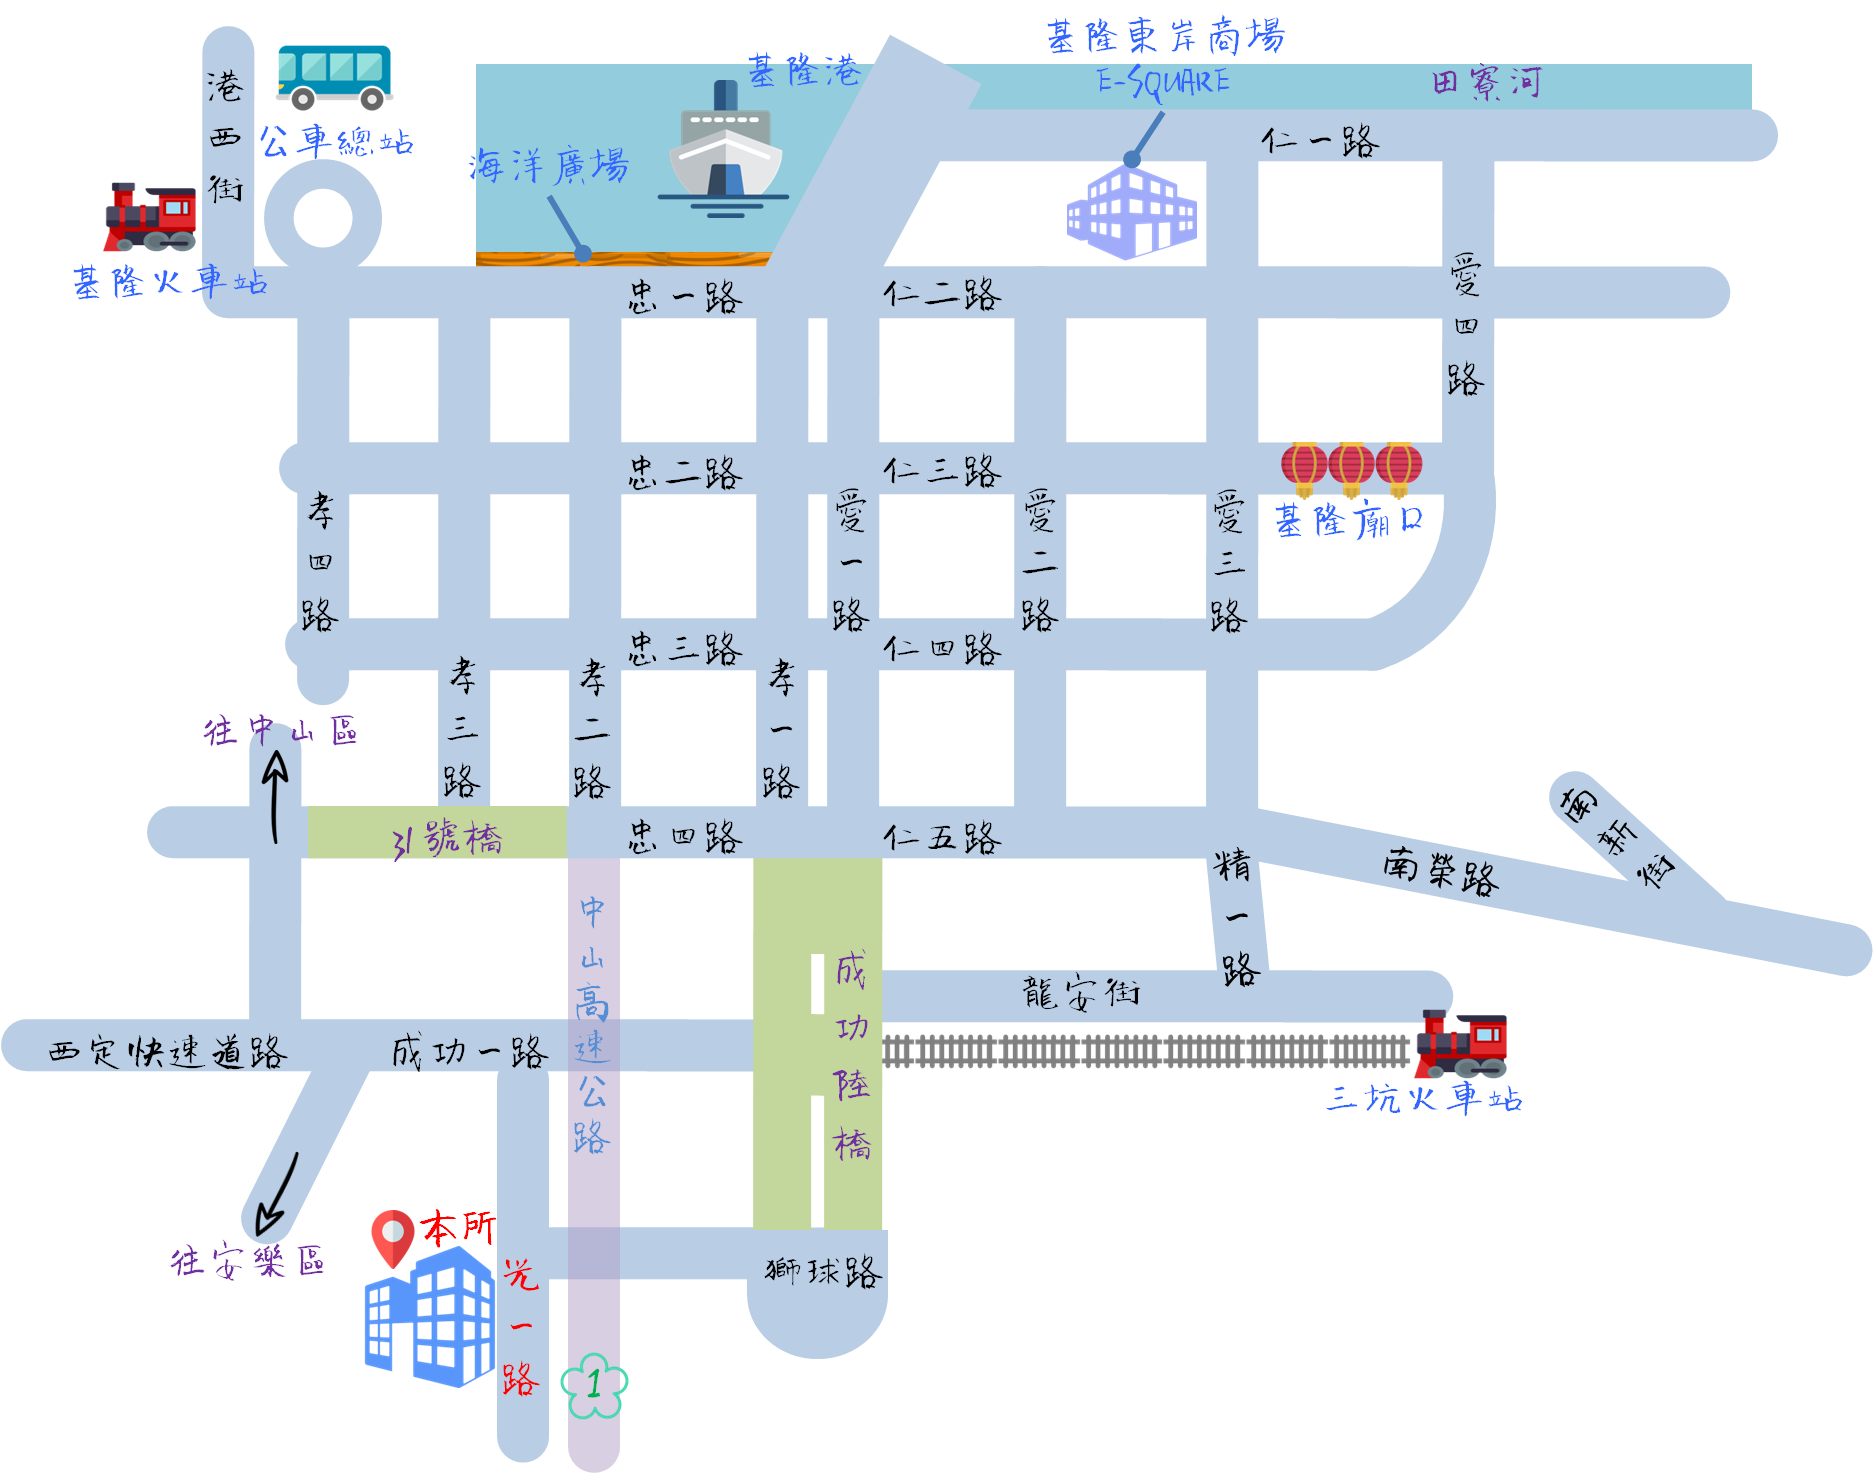 仁愛區衛生所轄內主要街道及特色景點相對交通位置